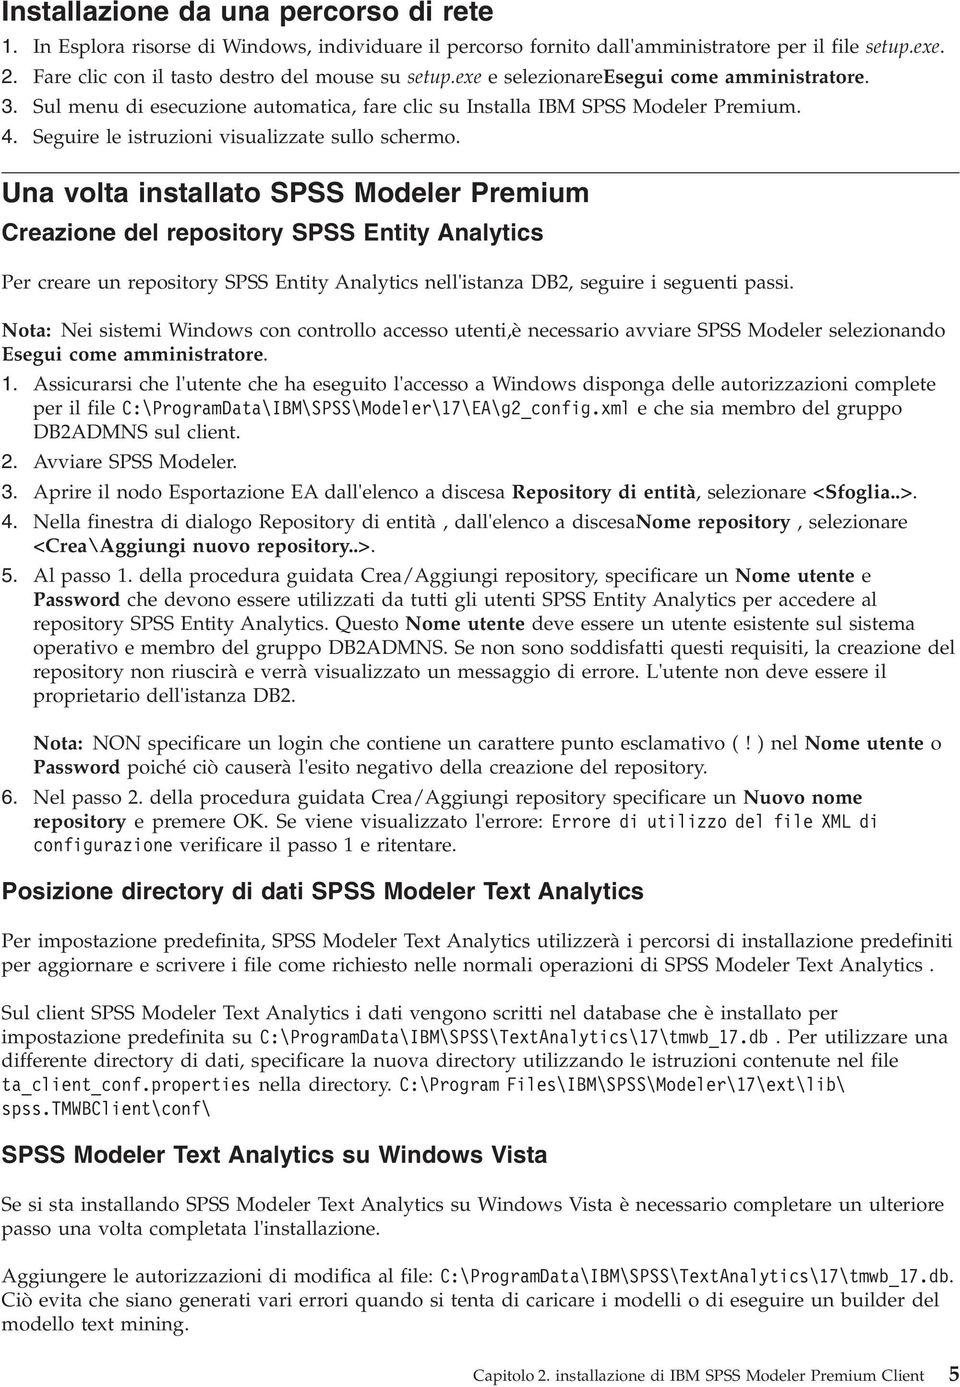 Una volta installato SPSS Modeler Premium Creazione del repository SPSS Entity Analytics Per creare un repository SPSS Entity Analytics nell'istanza DB2, seguire i seguenti passi.